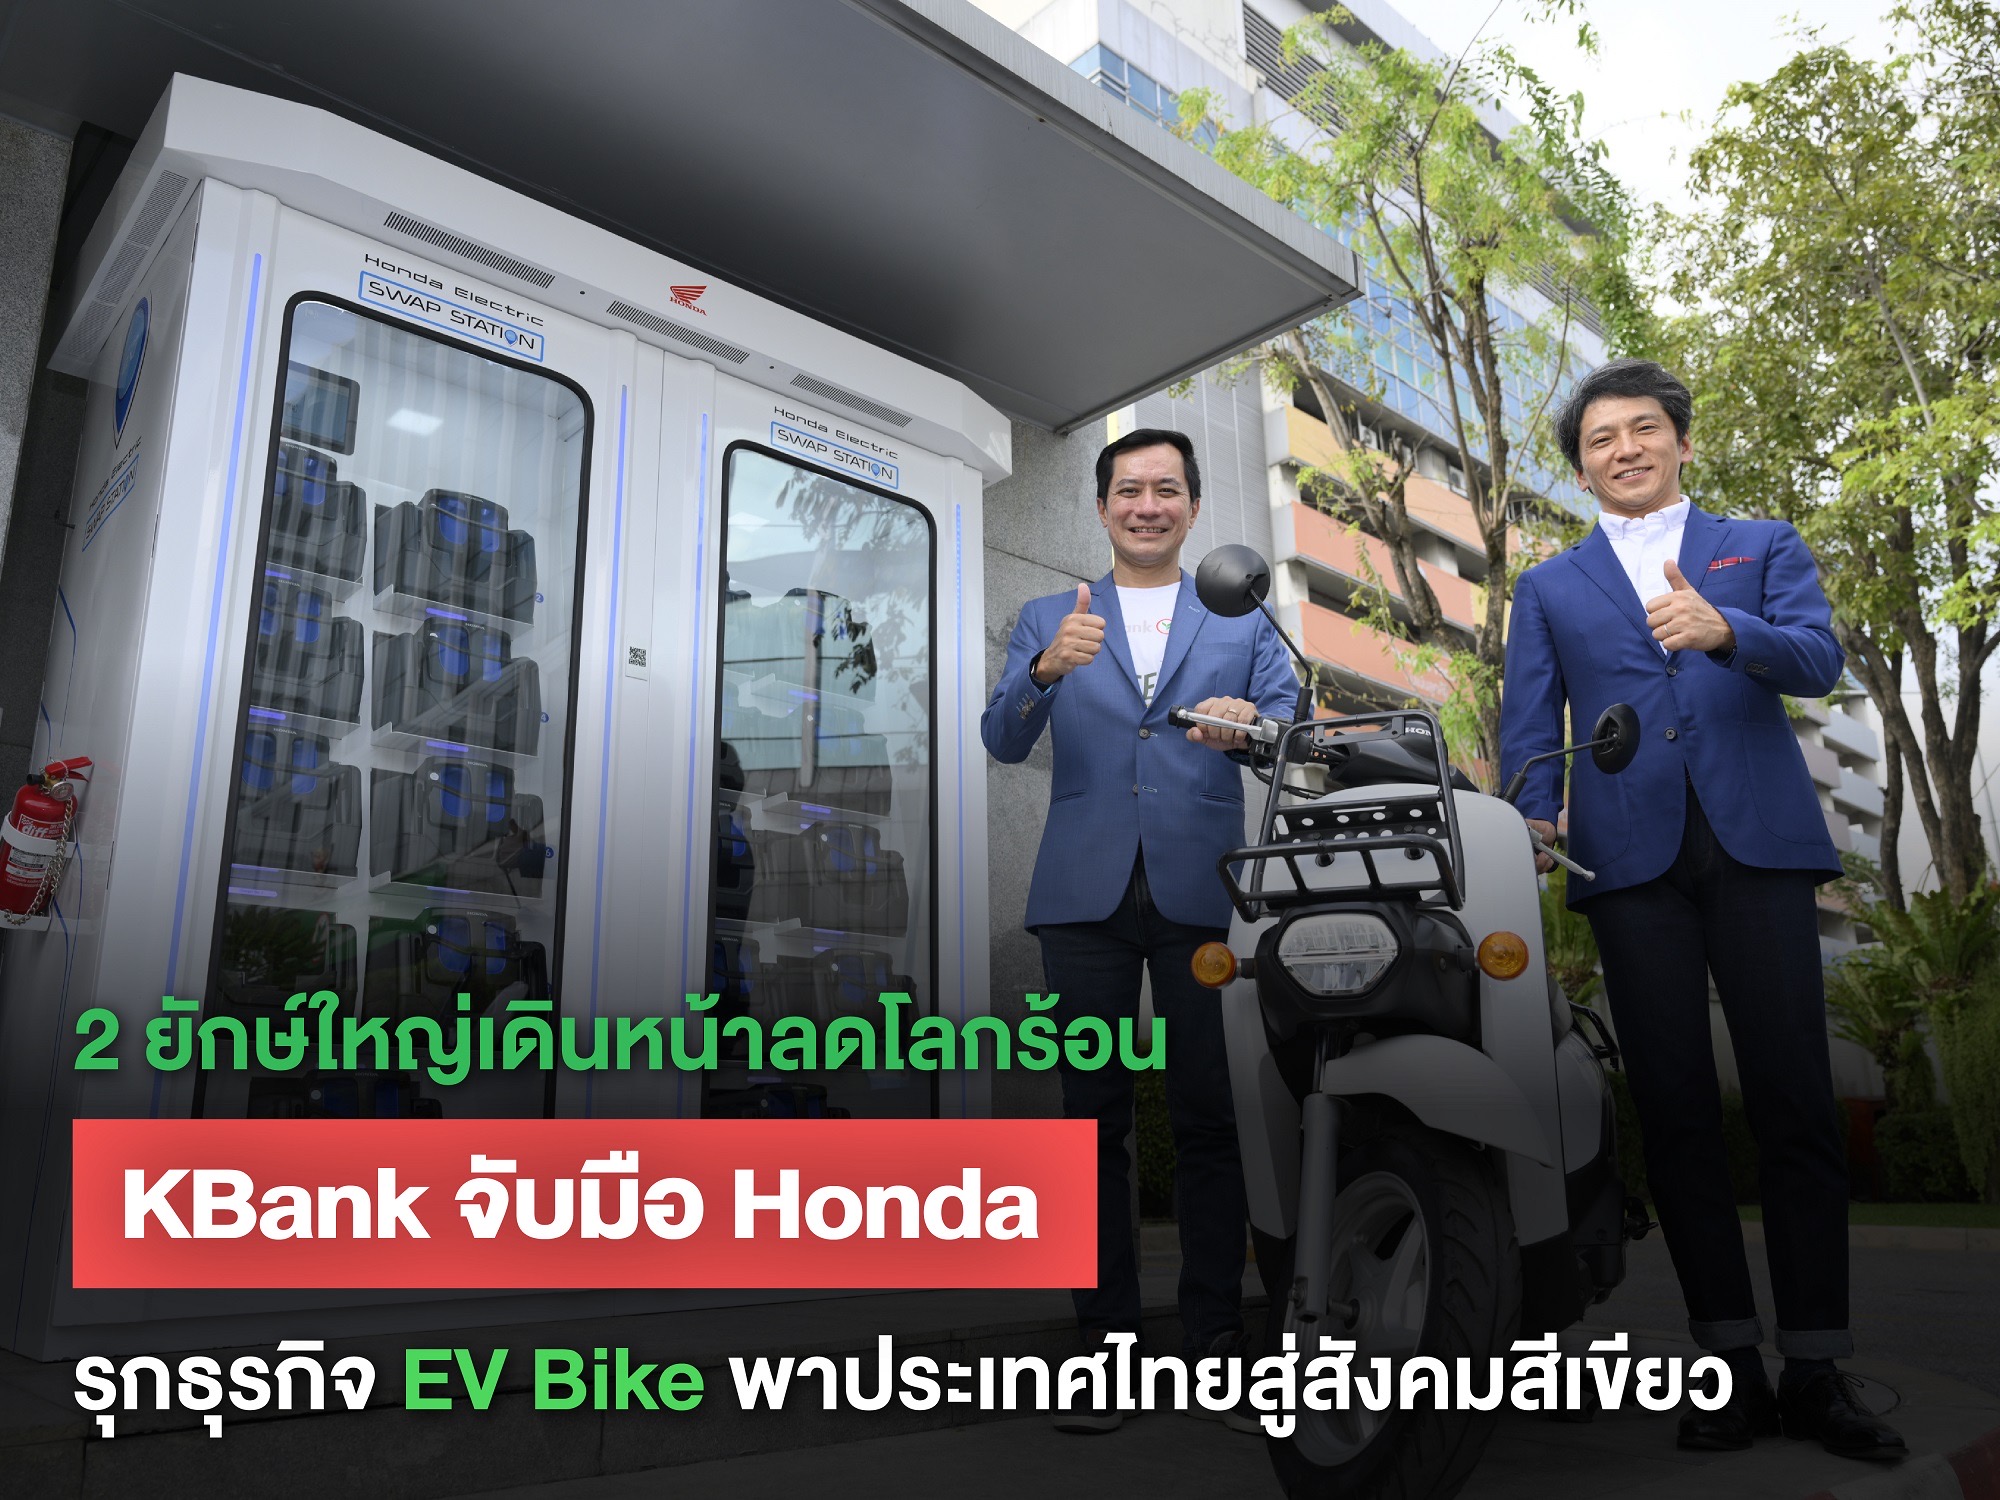 2 ยักษ์ใหญ่เดินหน้าลดโลกร้อน เคแบงก์ จับมือไทยฮอนด้า รุกธุรกิจ EV Bike สู่สังคมสีเขียว